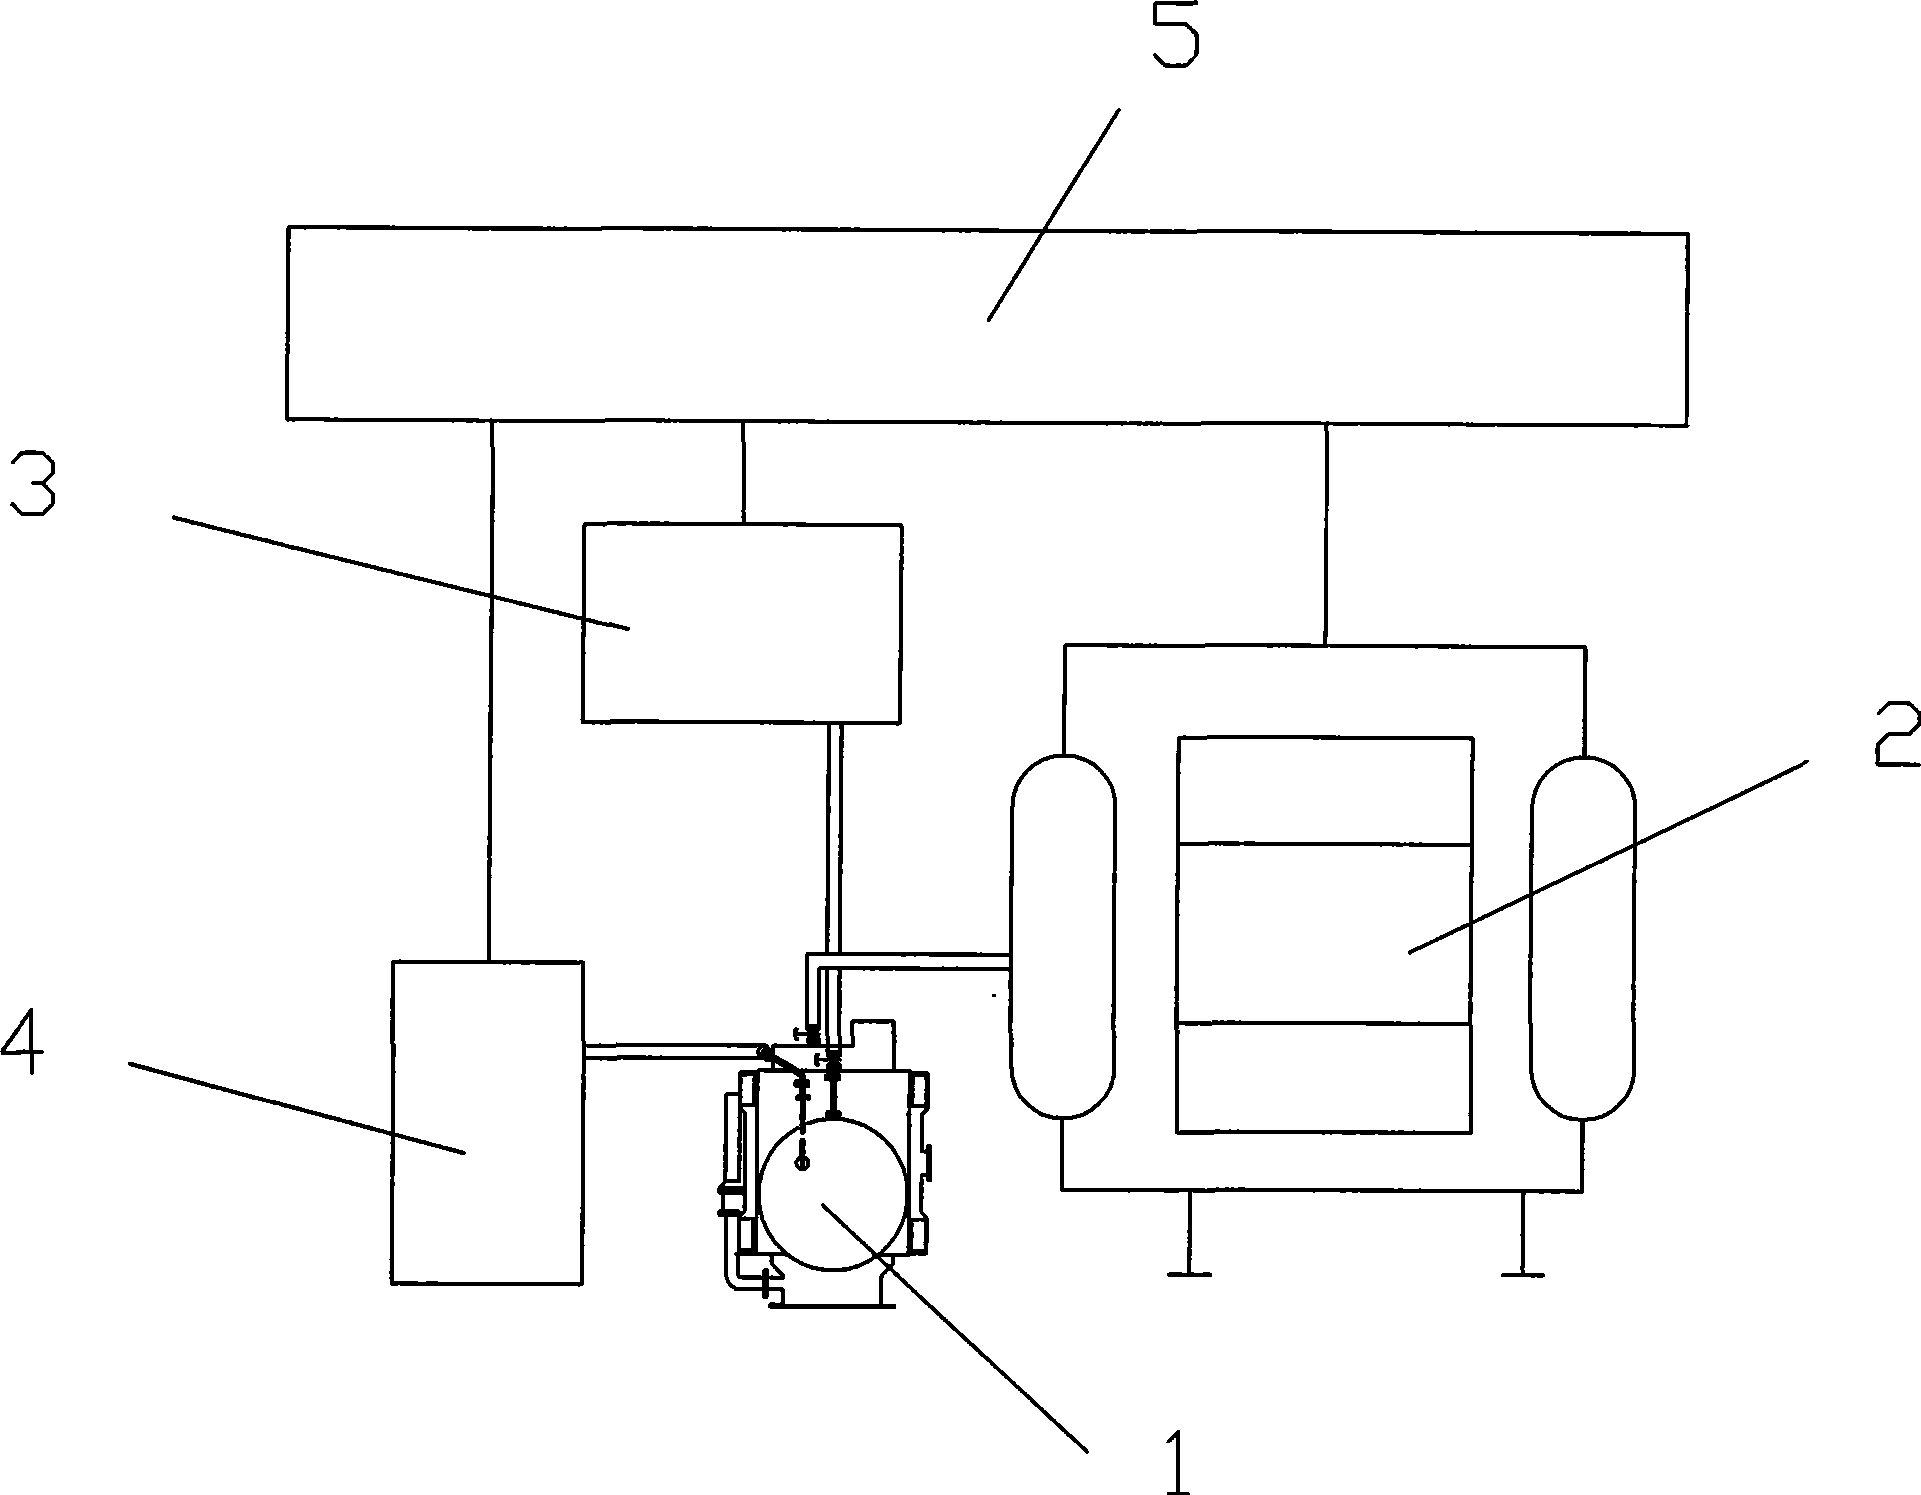 Technique and apparatus for oiling transformer silicon oil